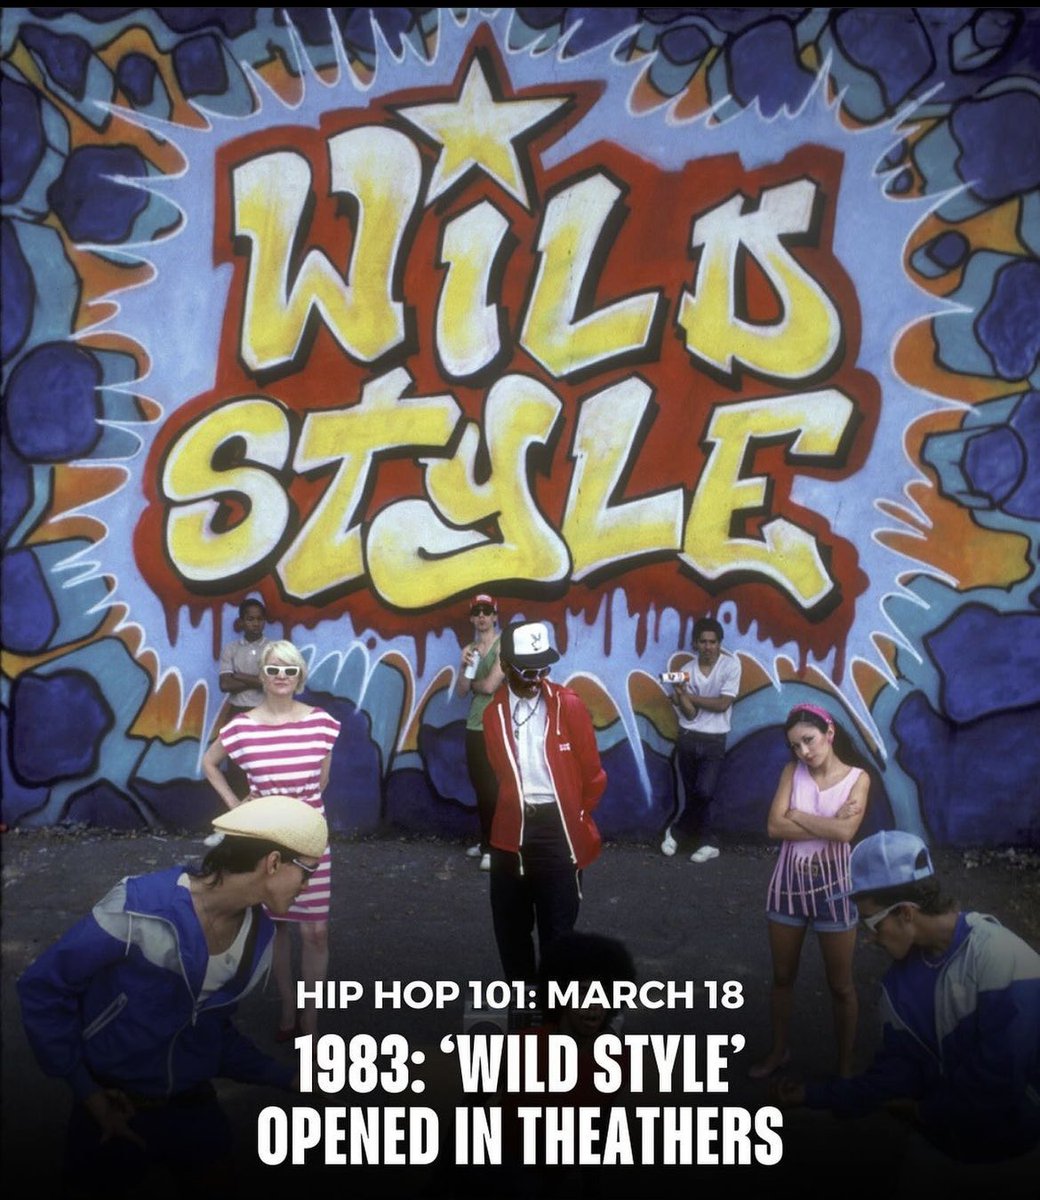 Tal día como hoy
Hace 41 años!!!
Se estrenaba WILD STYLE 
Para muchos la película/Doc que es la “biblia del hiphop”
Fab5freddy,Blondie,Grandmaster Fladh,Rock Steady Crew,lee quiñones etc. #Classic #Wildstyle